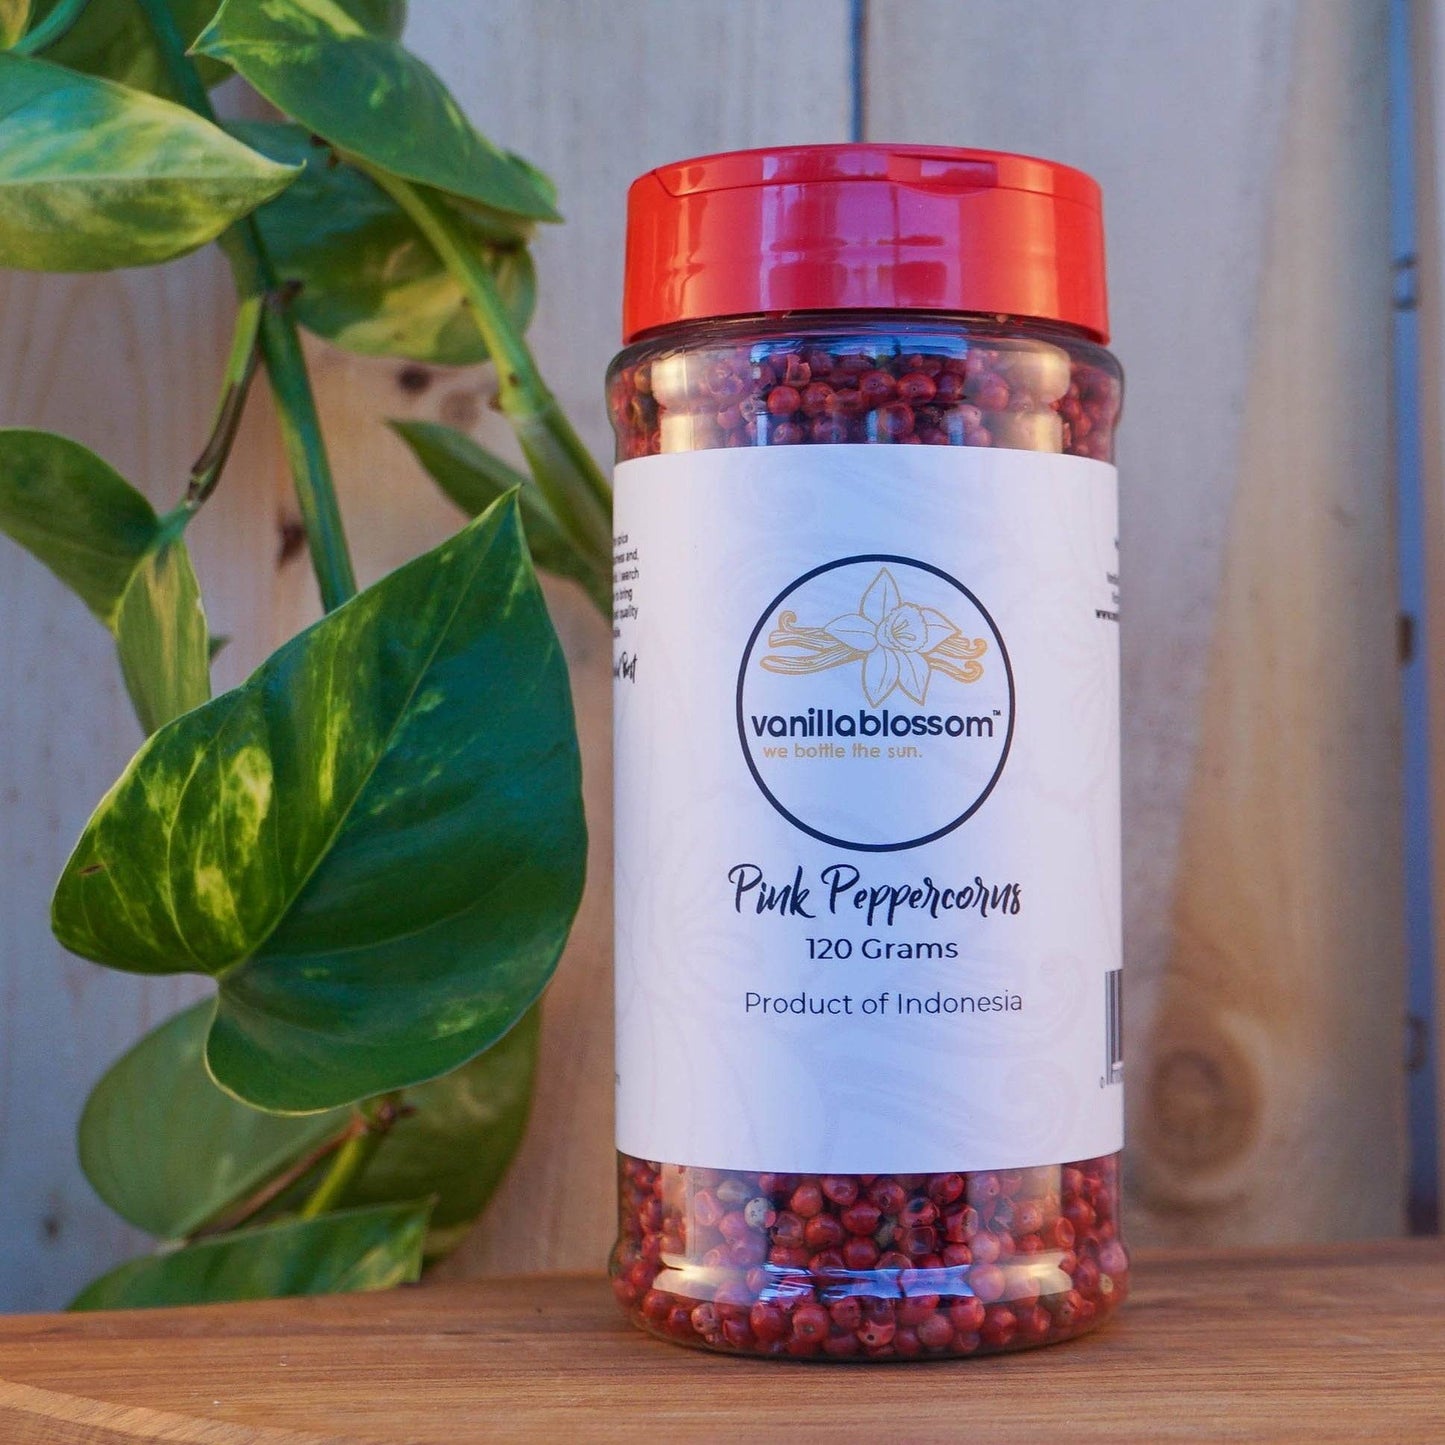 Pink Peppercorns 120g